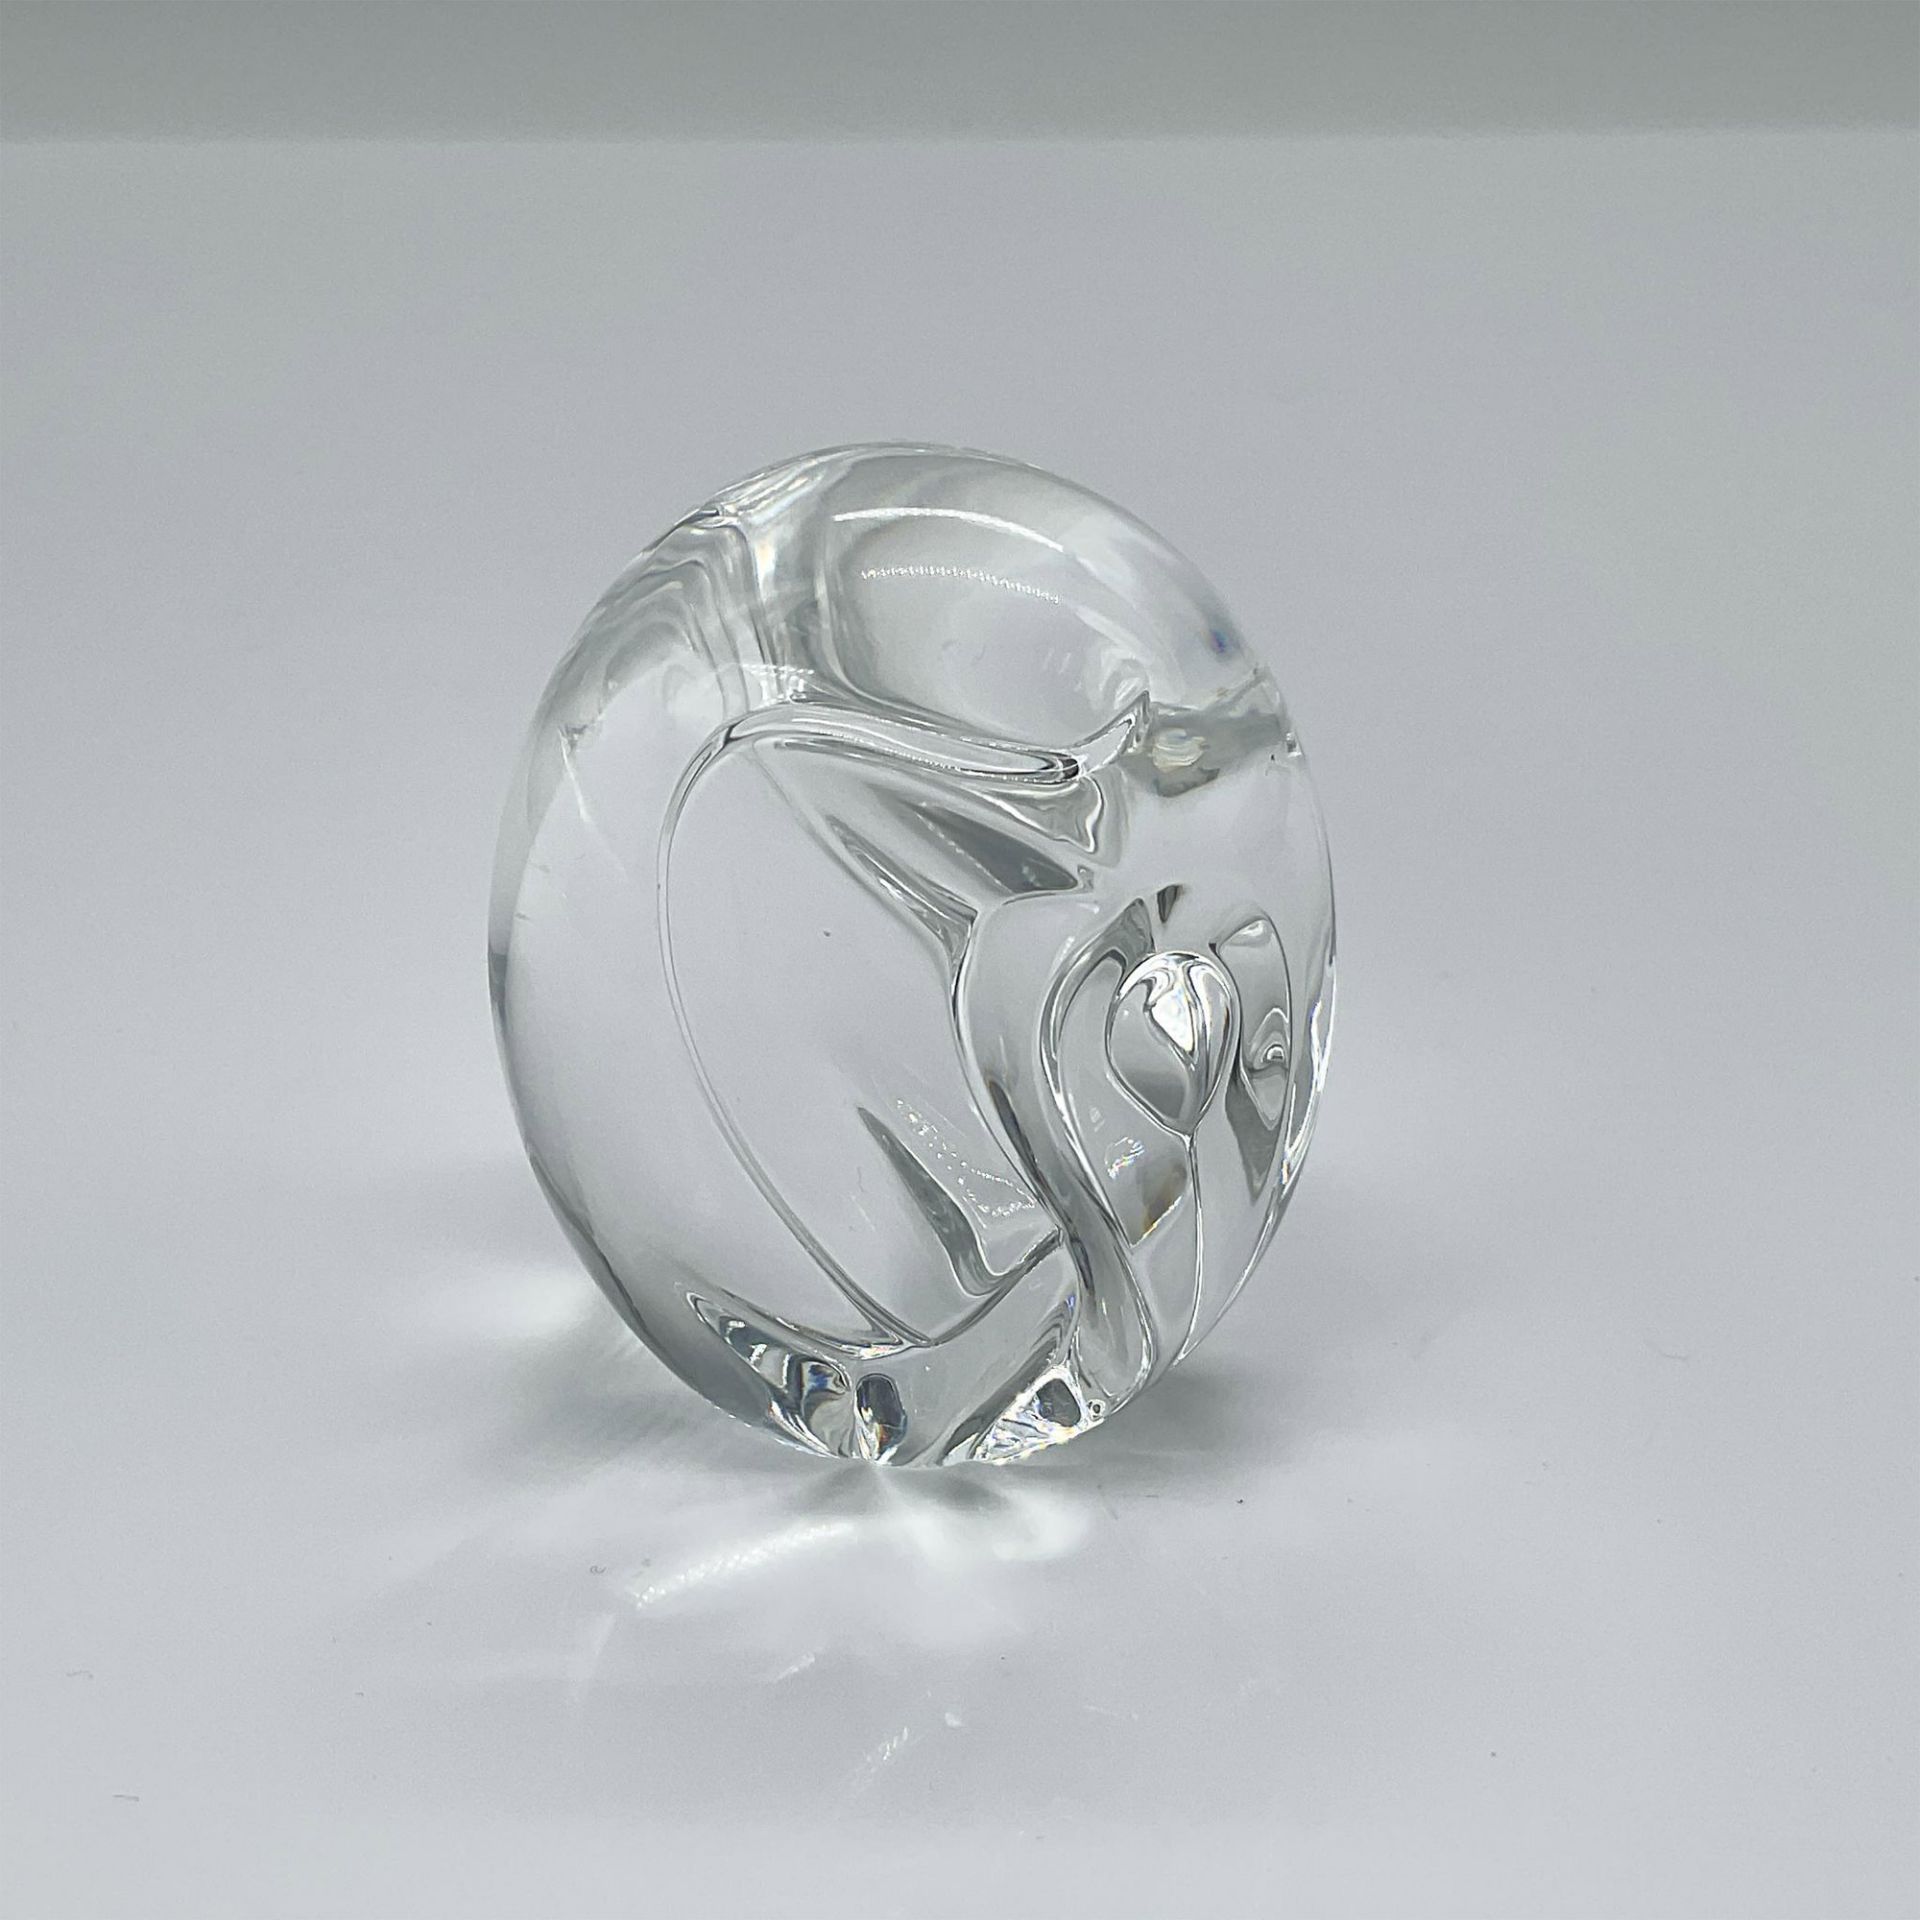 Steuben Glass Crystal Modernist Elephant Hand Cooler - Image 2 of 3